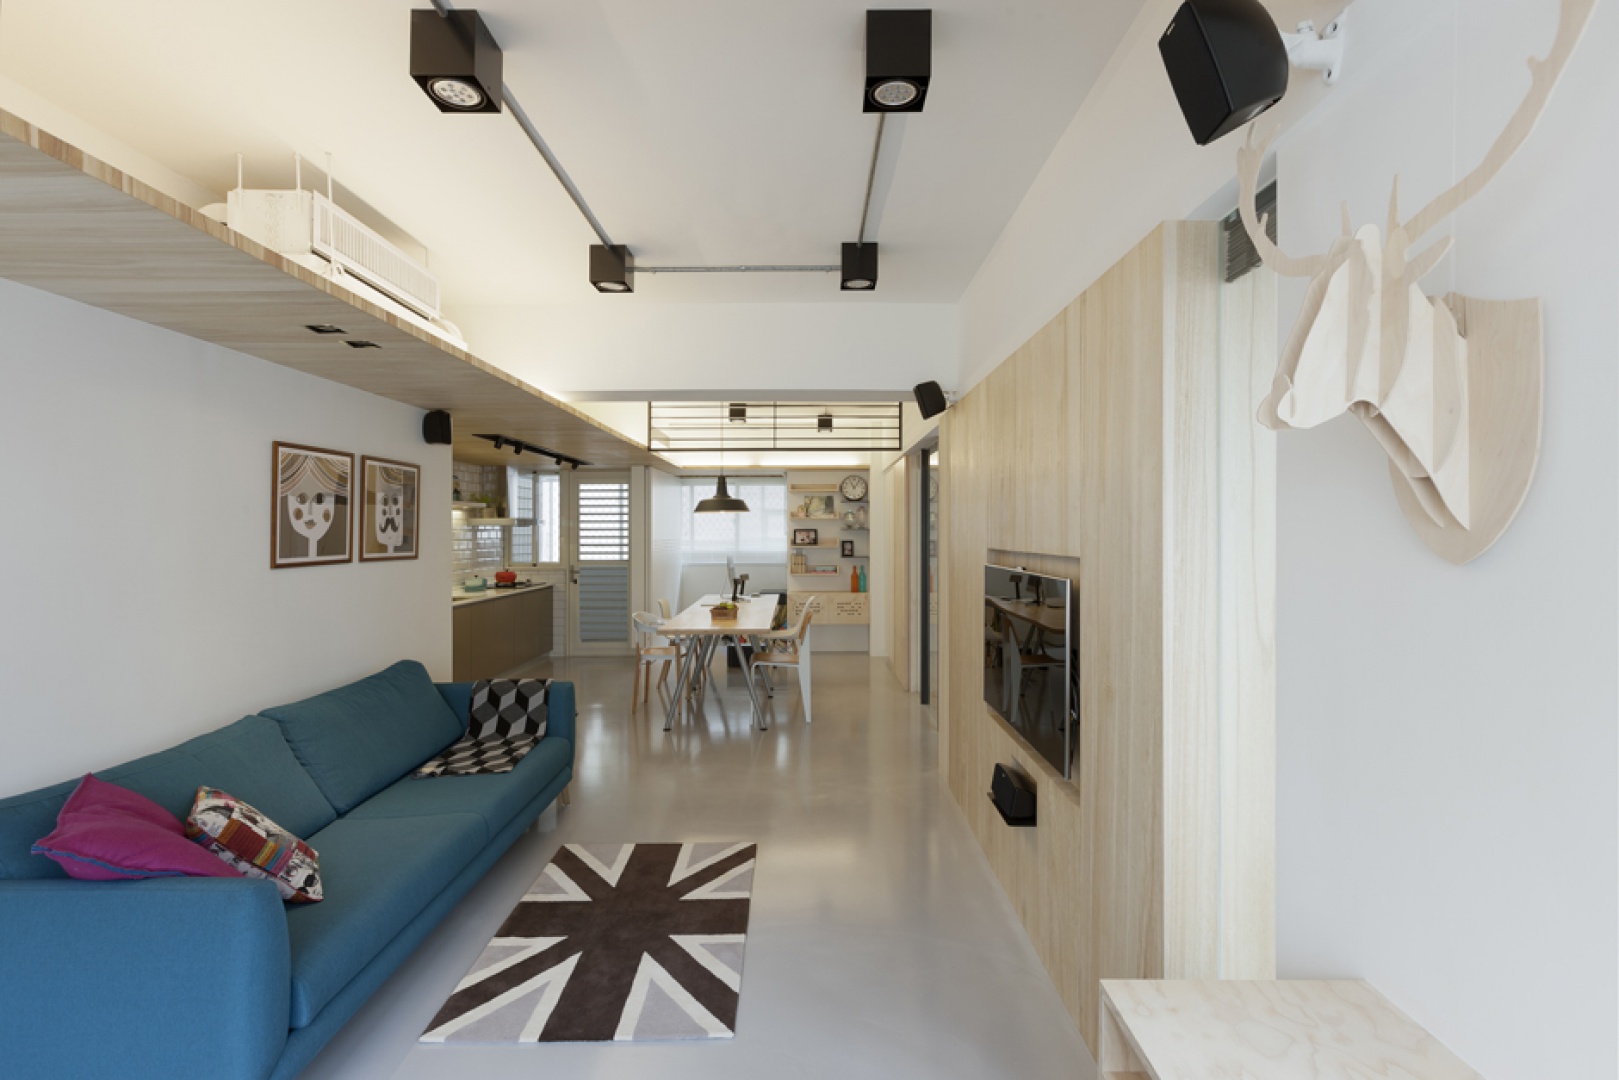 Mieszkanie urządzono w stylu, nawiązującym do estetyki wnętrz charakterystycznych dla północy Europy. Jest zatem dużo biel i drewna. Projekt: KC Design Studio. Fot. KC Design Studio.